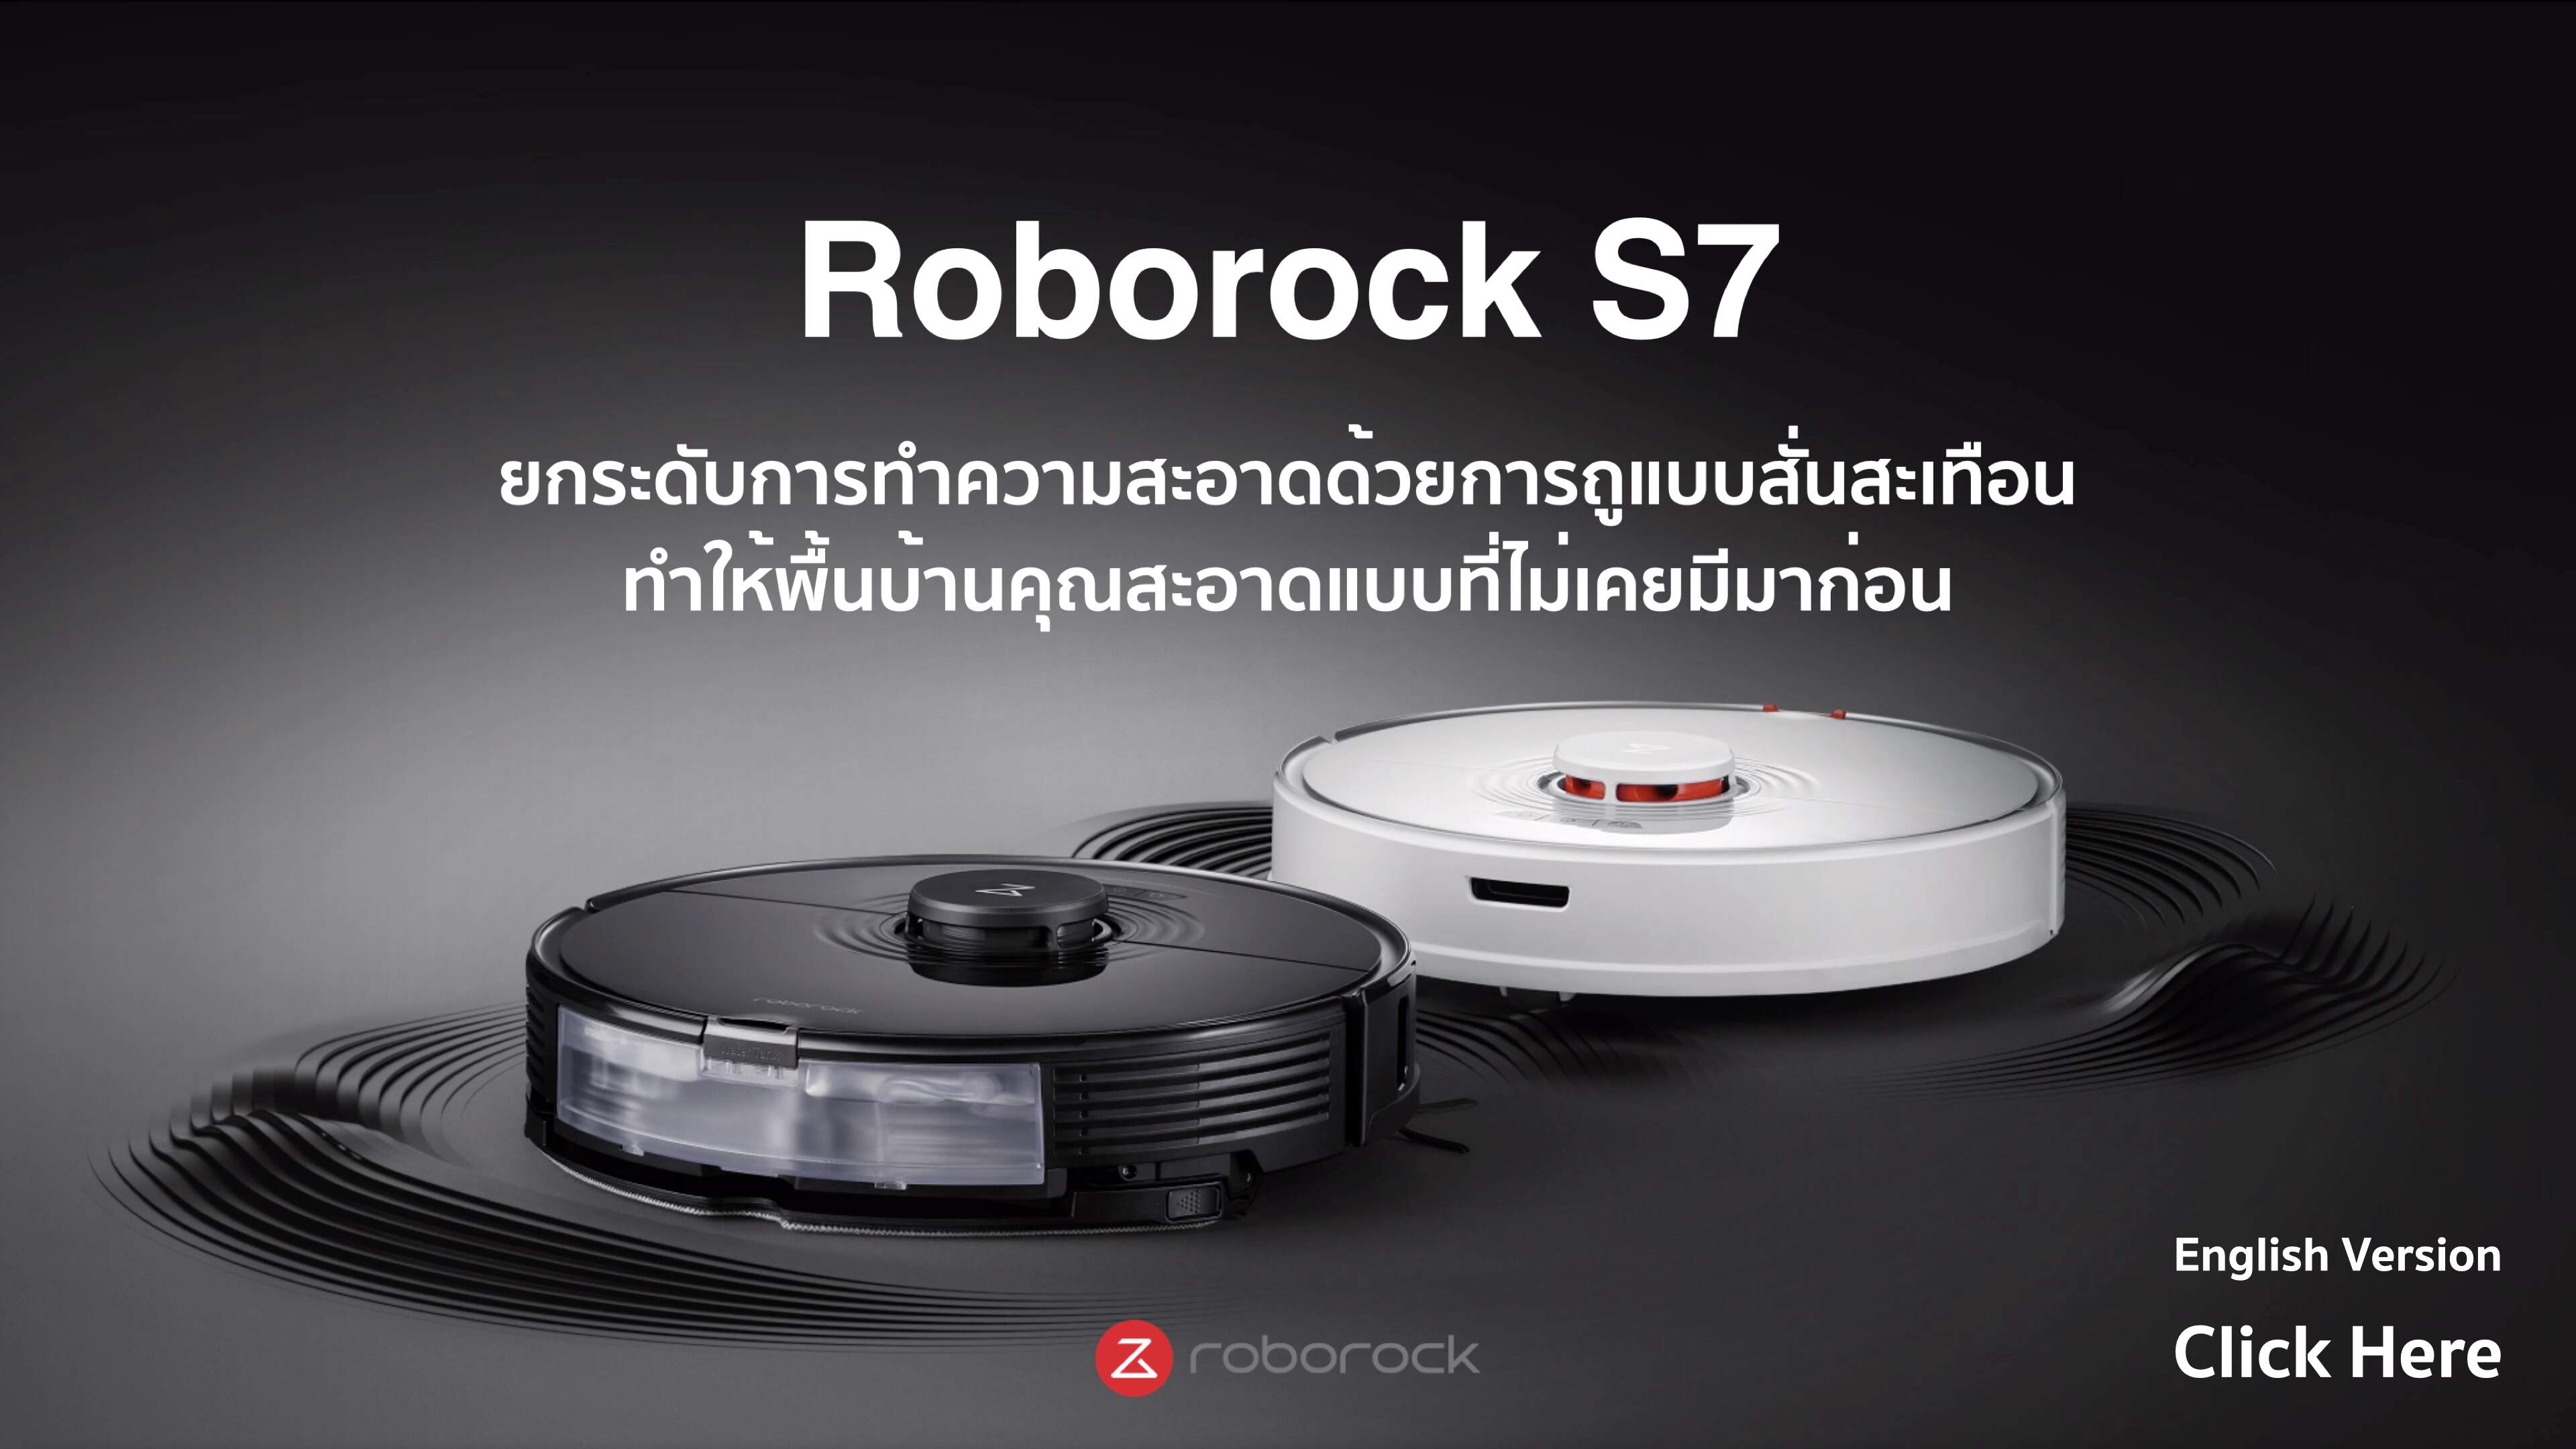 หุ่นยนต์ดูดฝุ่น ถูพื้น อัจฉริยะ โรโบร็อค Roborock S7 - Smart Robotic Vacuum and Mop Cleaner